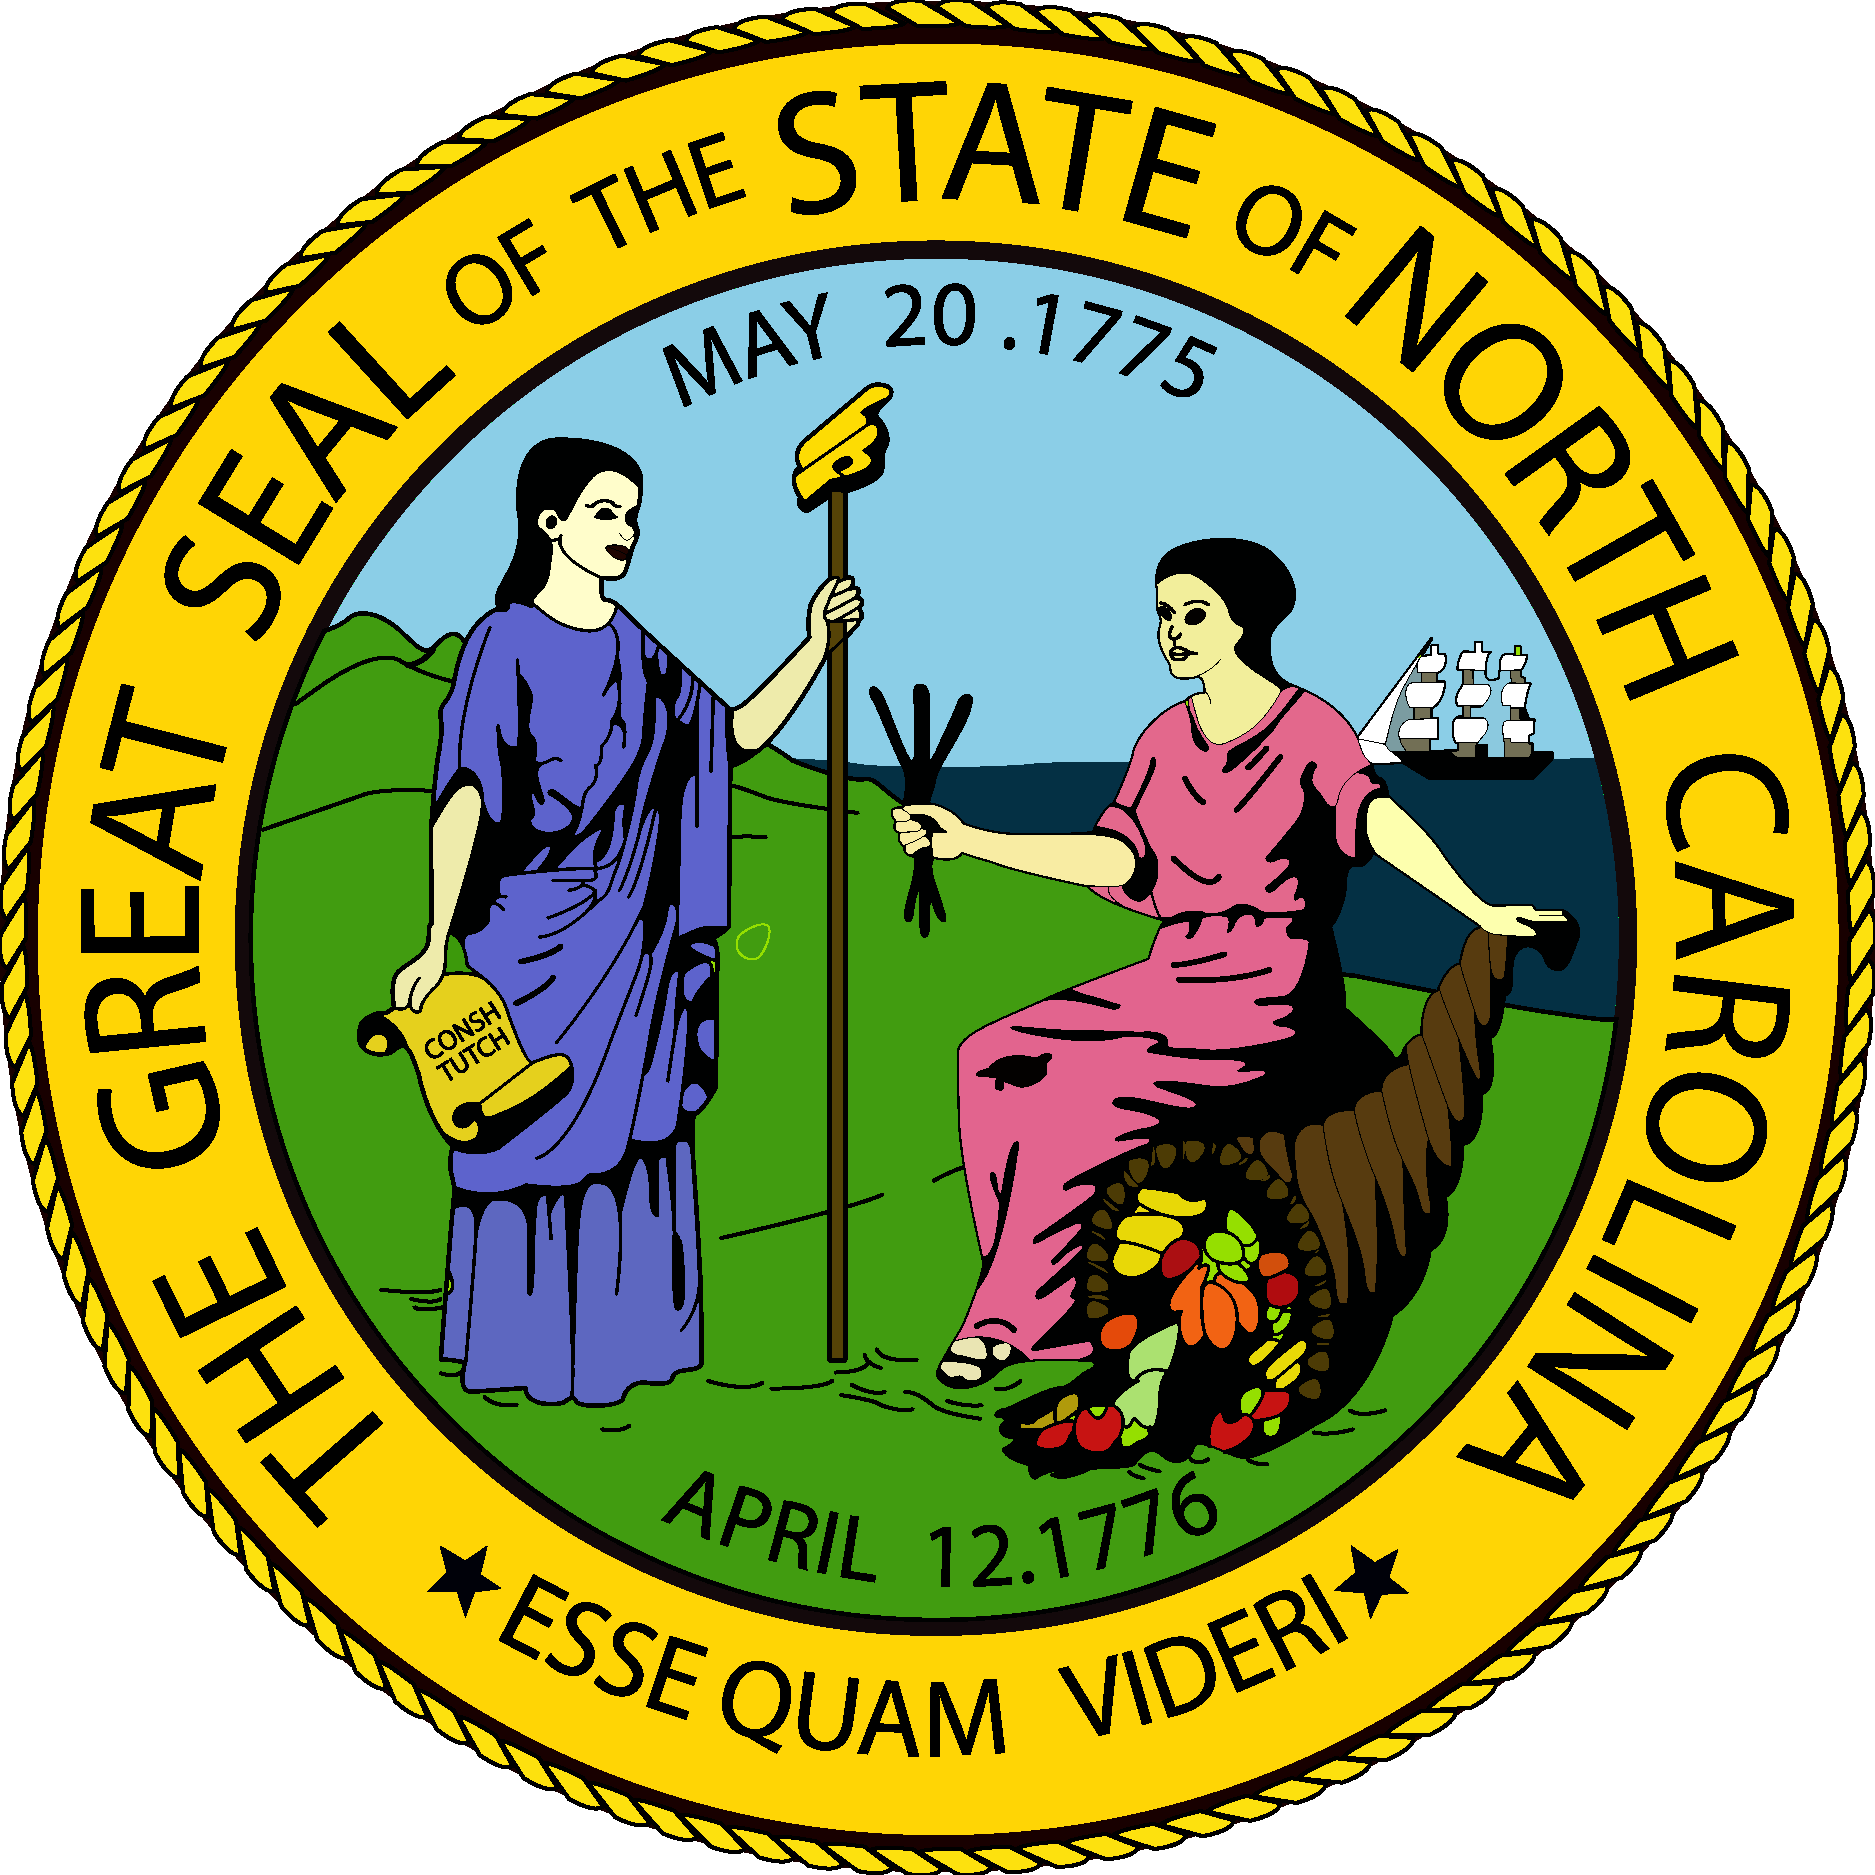 North Carolina State Seal Logo Vector